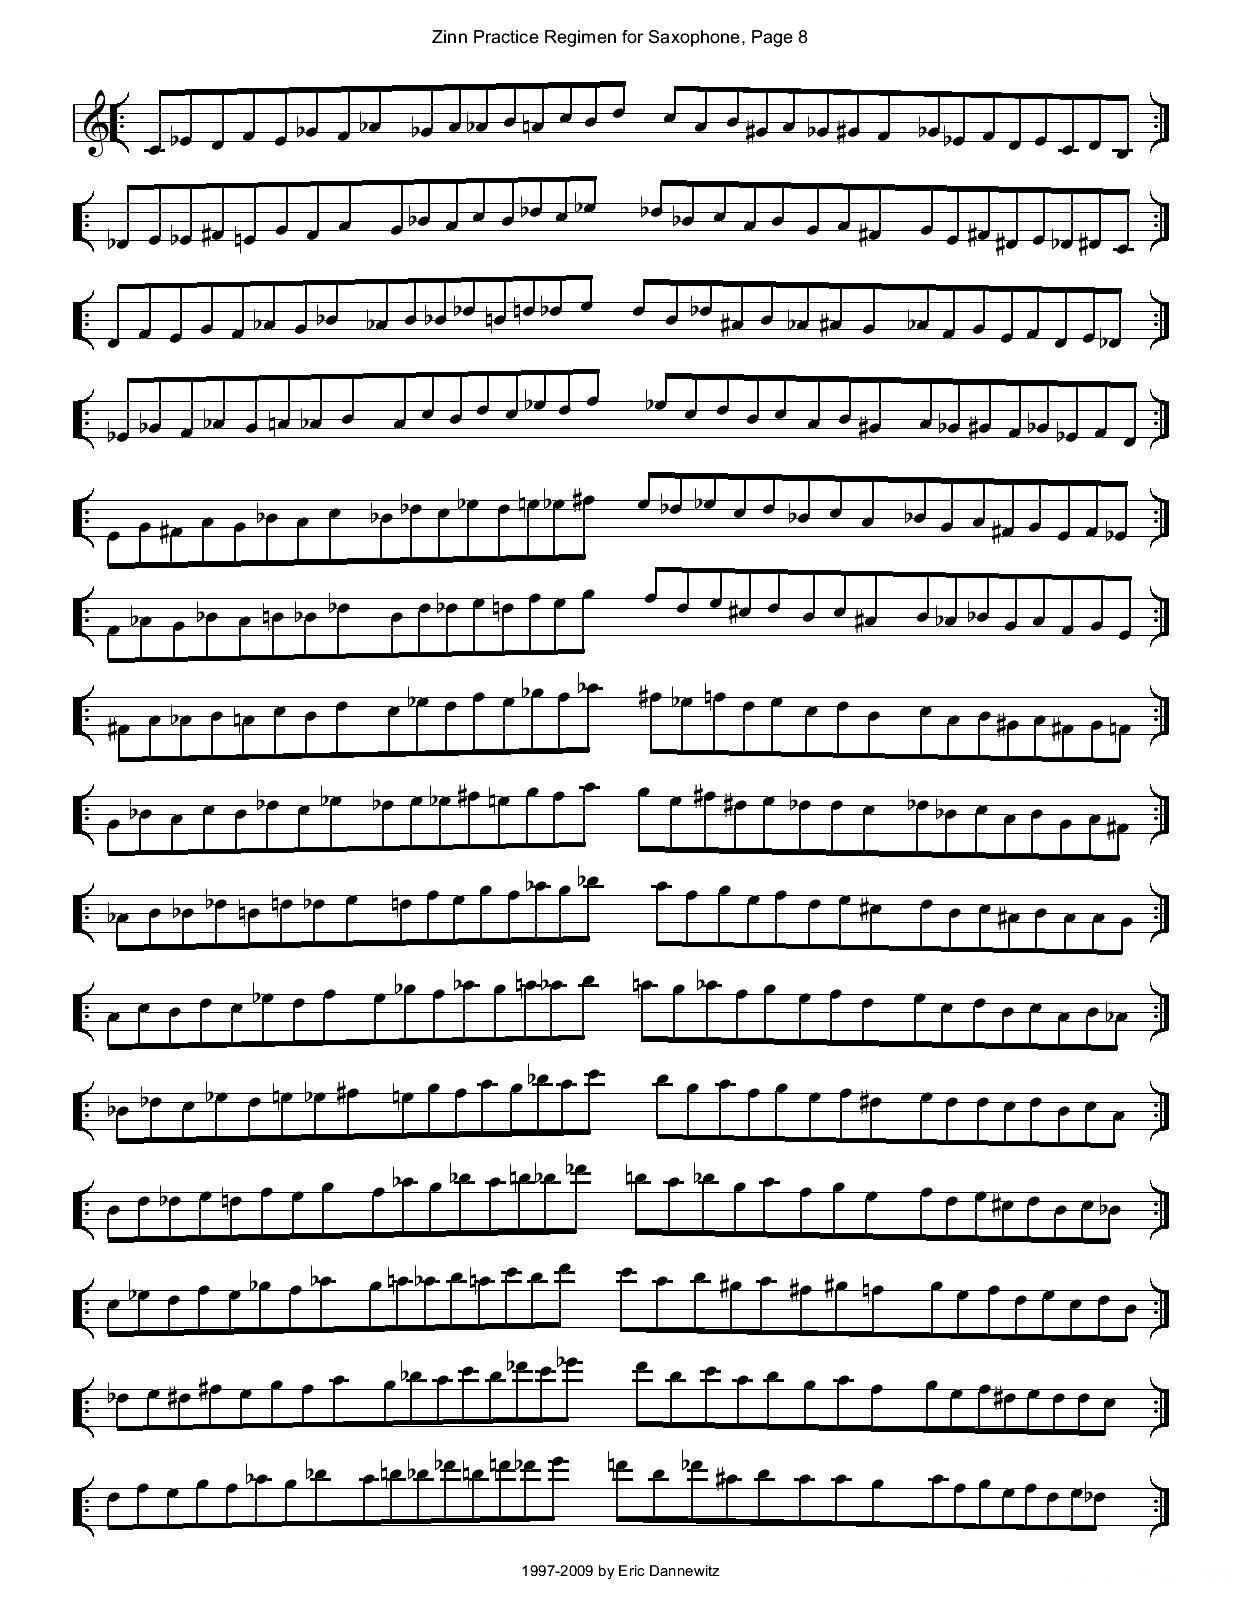 ZinnRegimenSax2009练习曲萨克斯曲谱（图11）